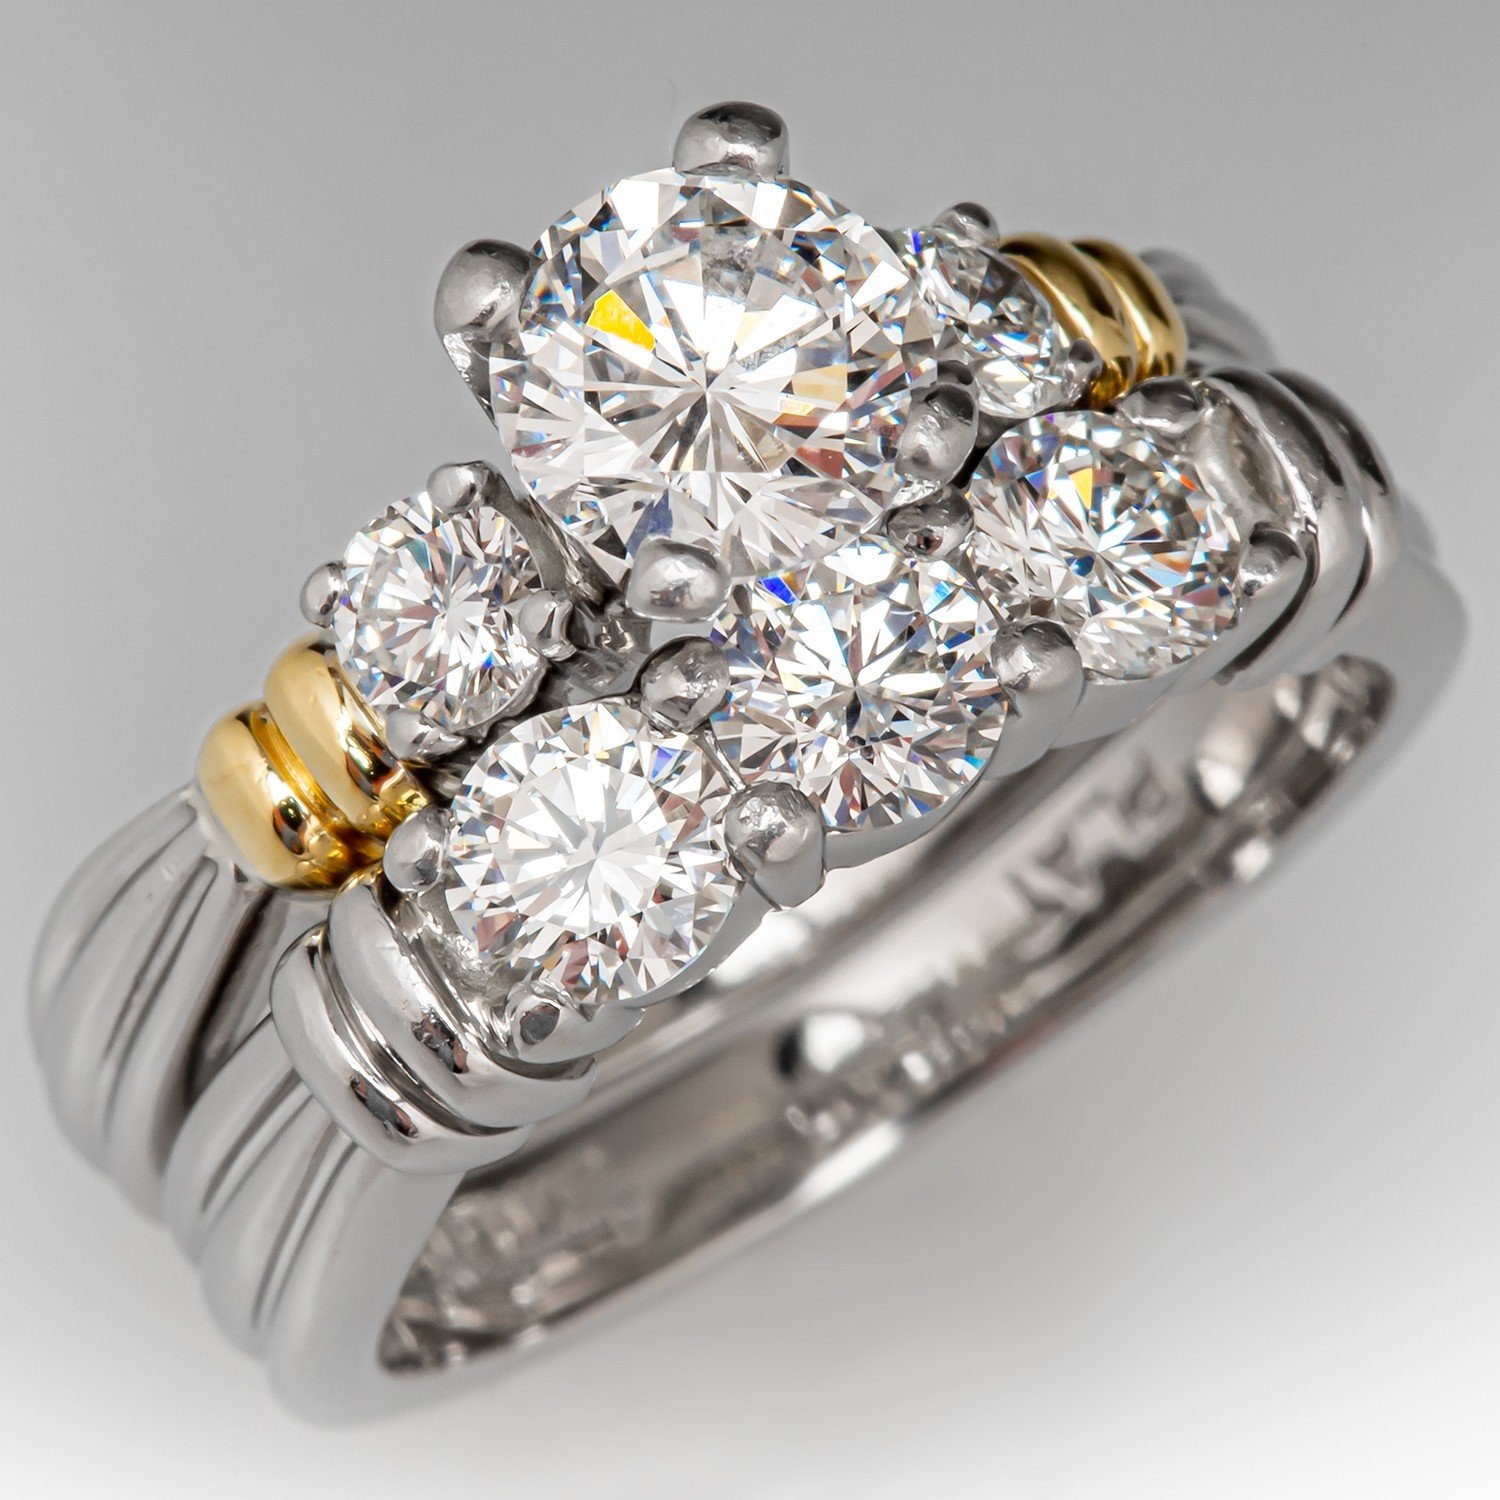 KAY CERTIFIED Princess Cut Diamond Engagement/Wedding Ring Set 1.48 CTTW  14K WG | eBay